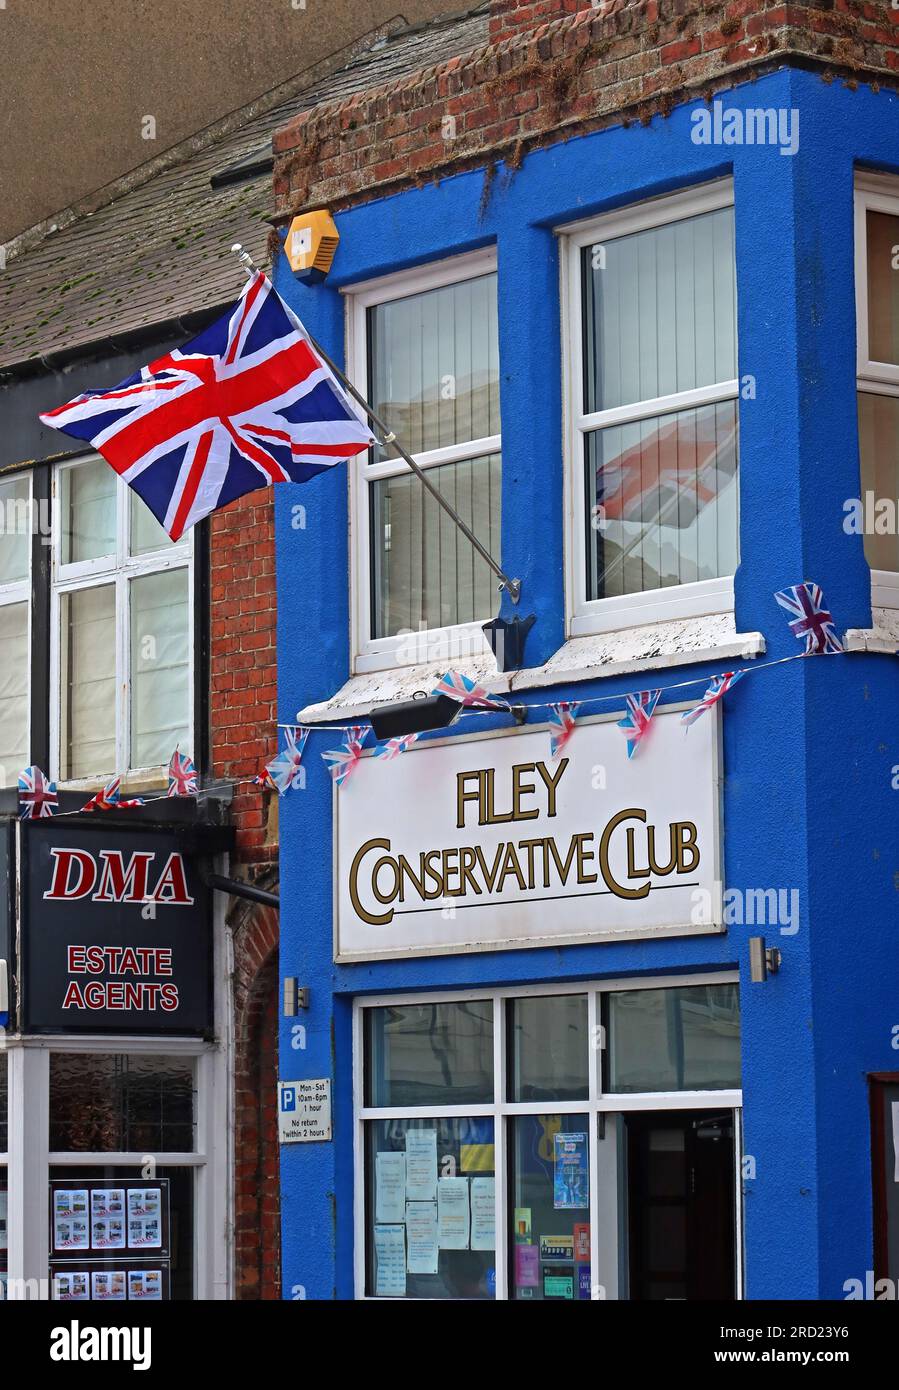 Filey con Club, 24 Belle Vue St, Filey, North Yorkshire, Inghilterra, Regno Unito, YO14 9HY Foto Stock